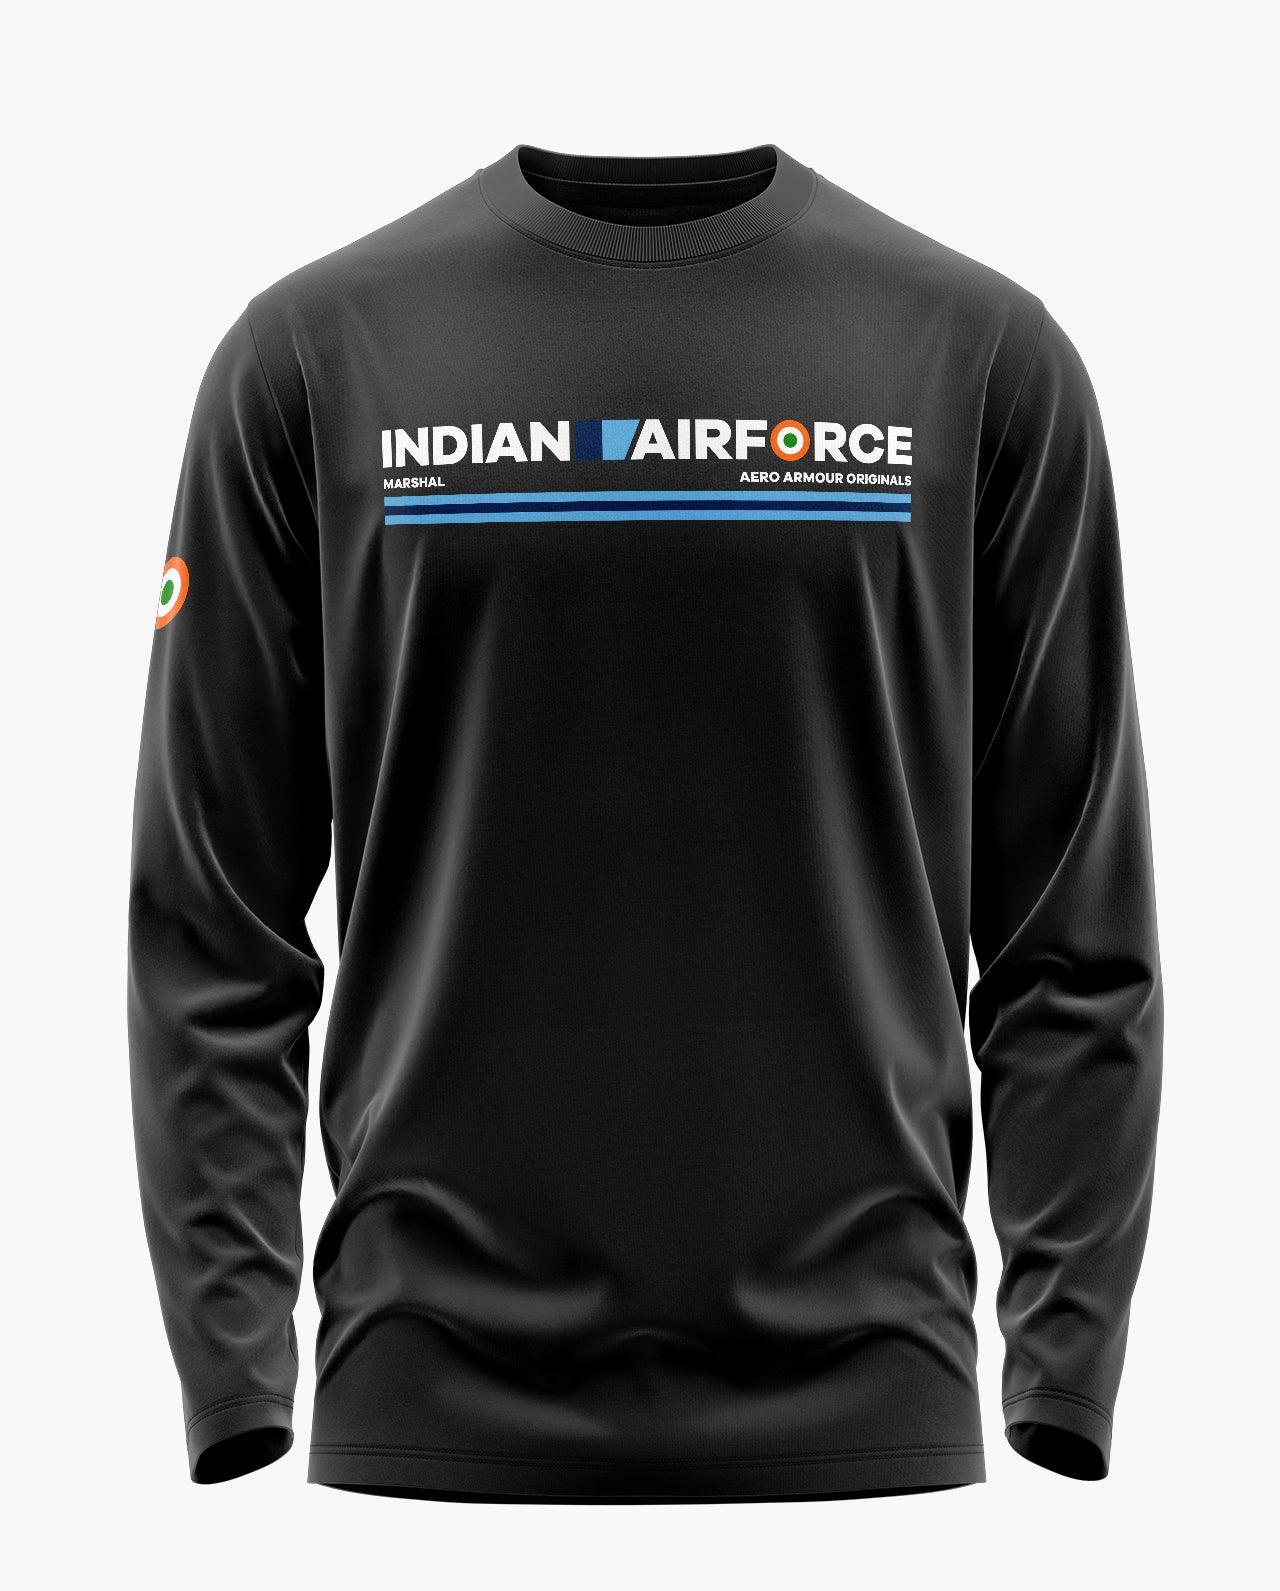 IAF Marshal Full Sleeve T-Shirt - Aero Armour